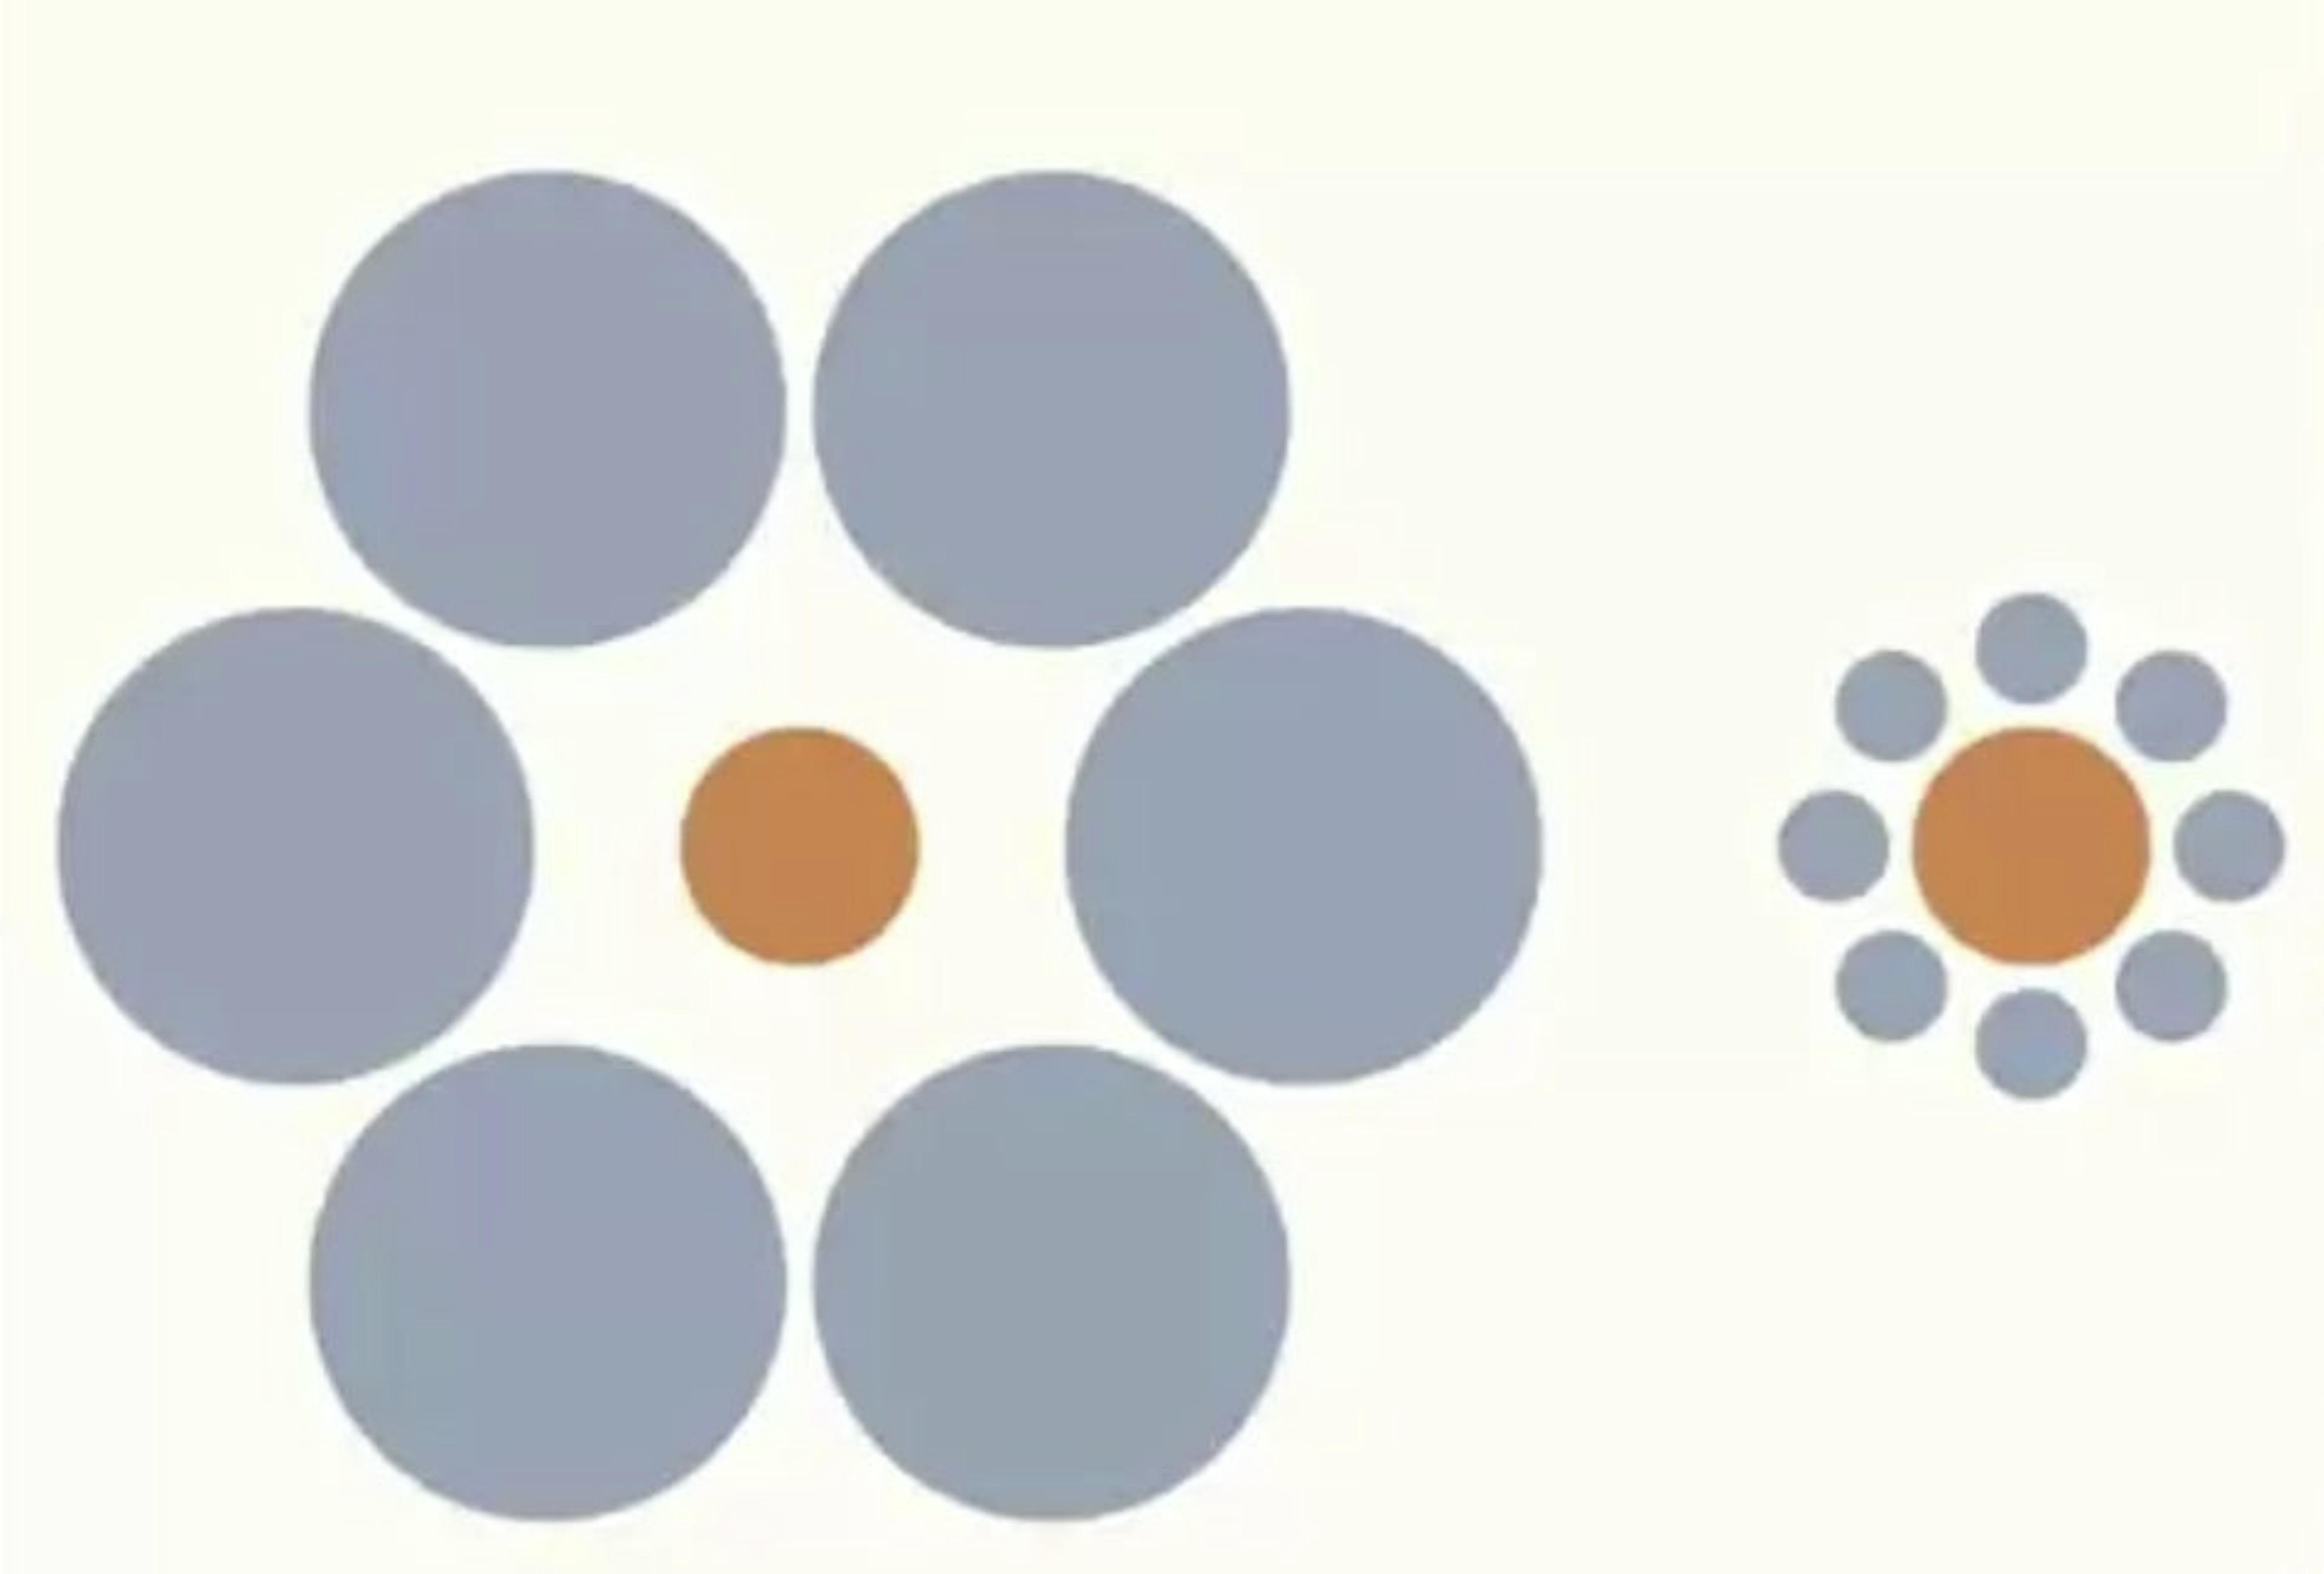 A ilusão de Ebbinghaus. Captura de tela da palestra do Dr. Santos no Coursera